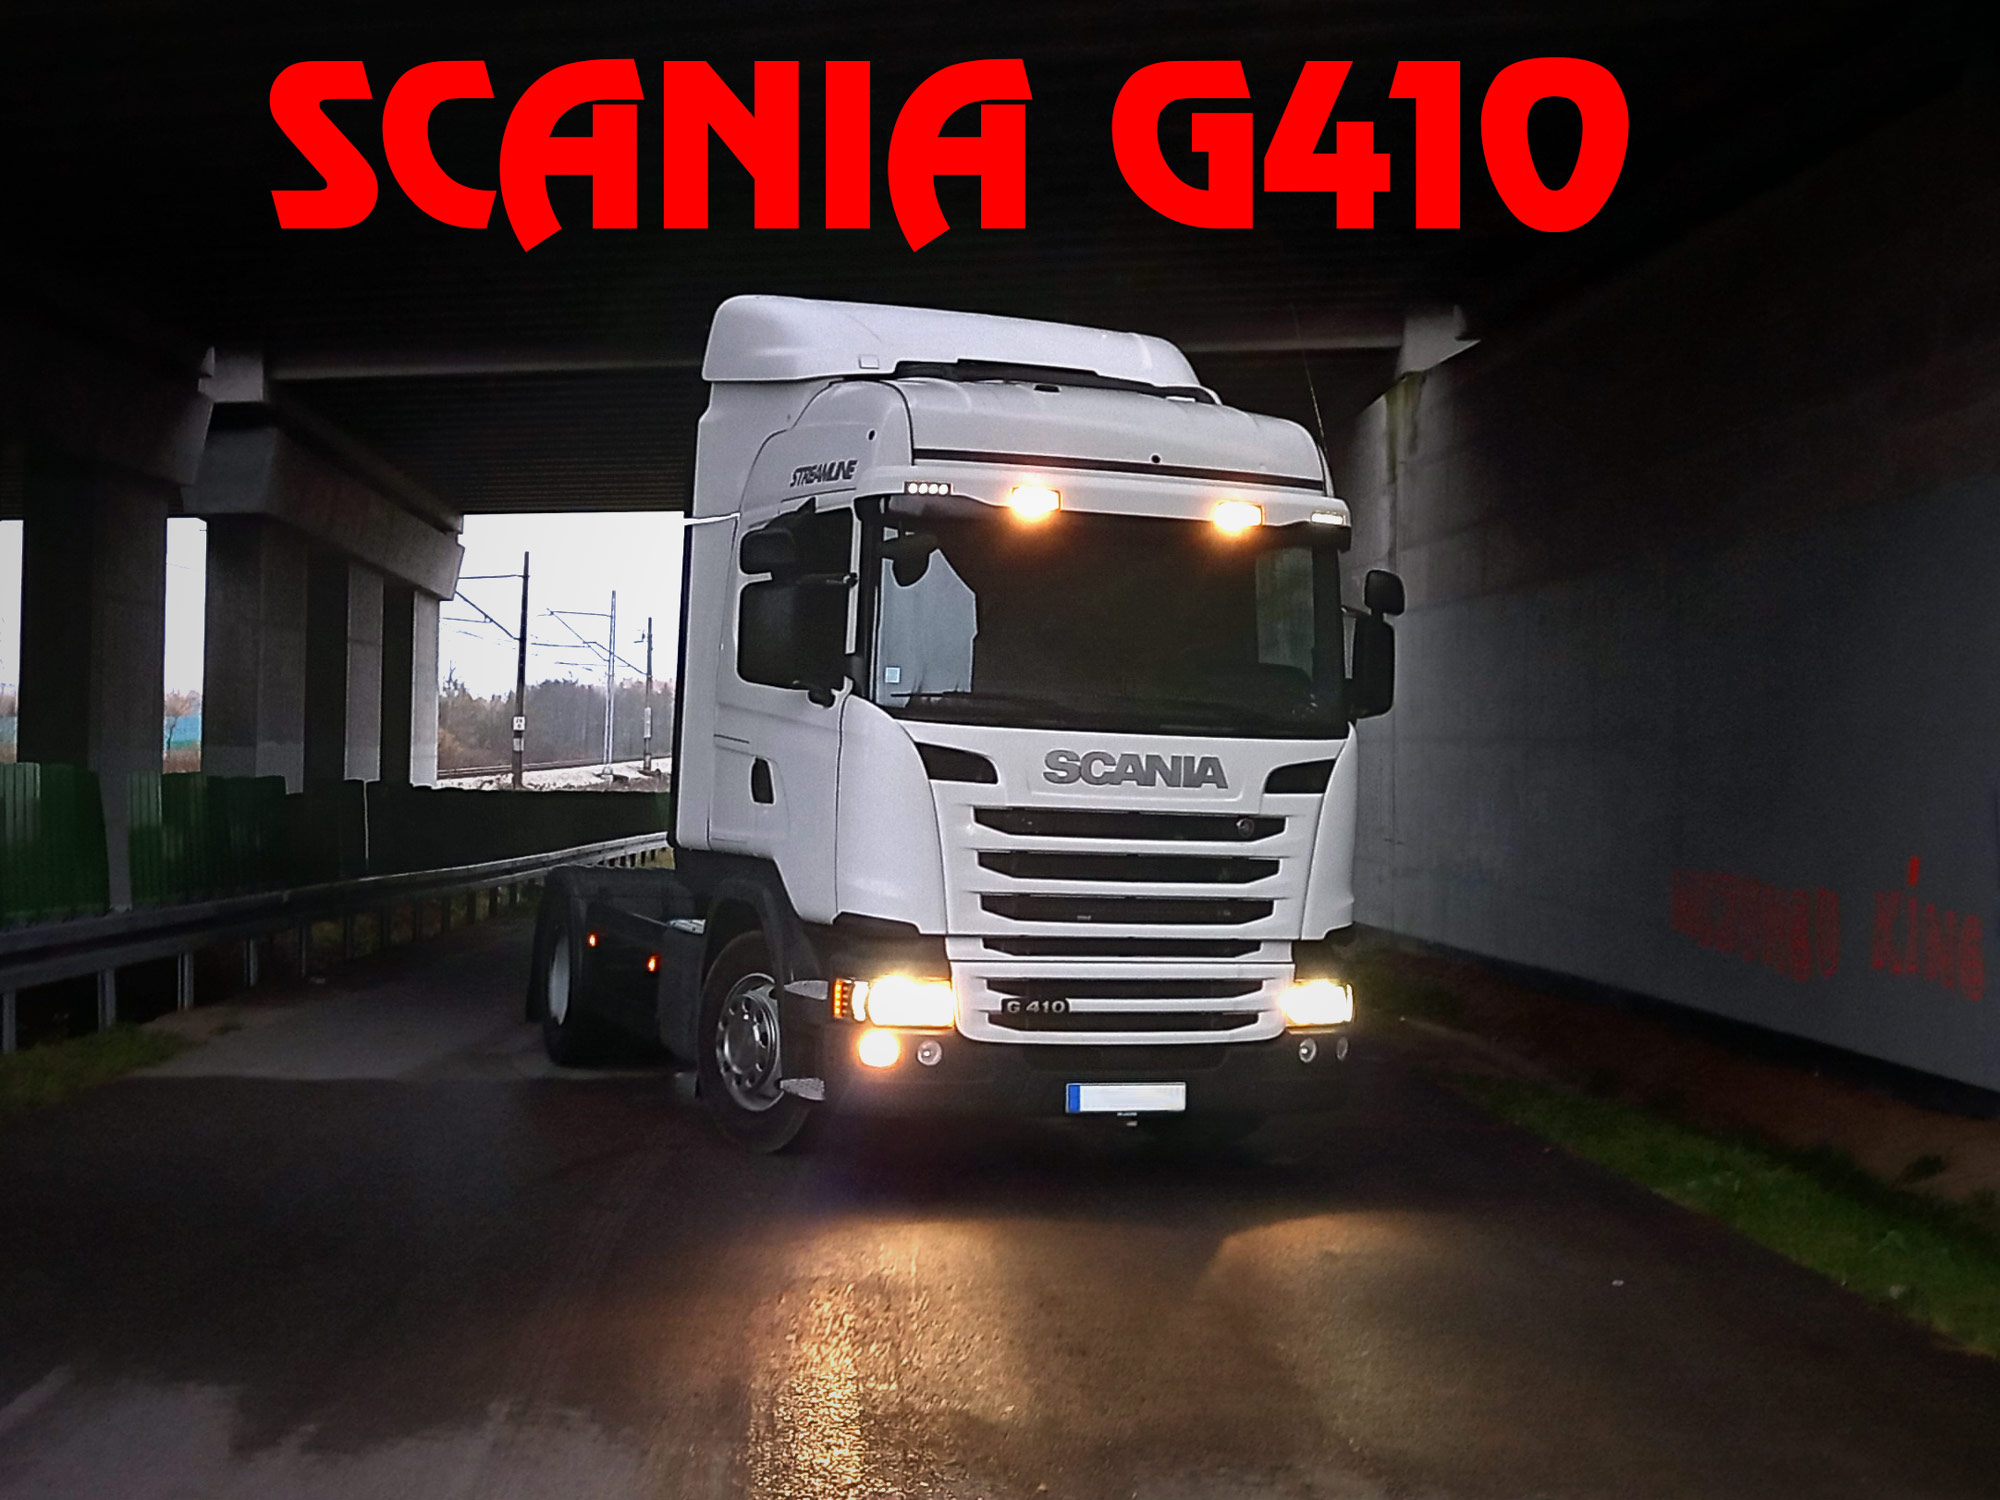 Wielki test schowków w wielkim wozie – Scania G410